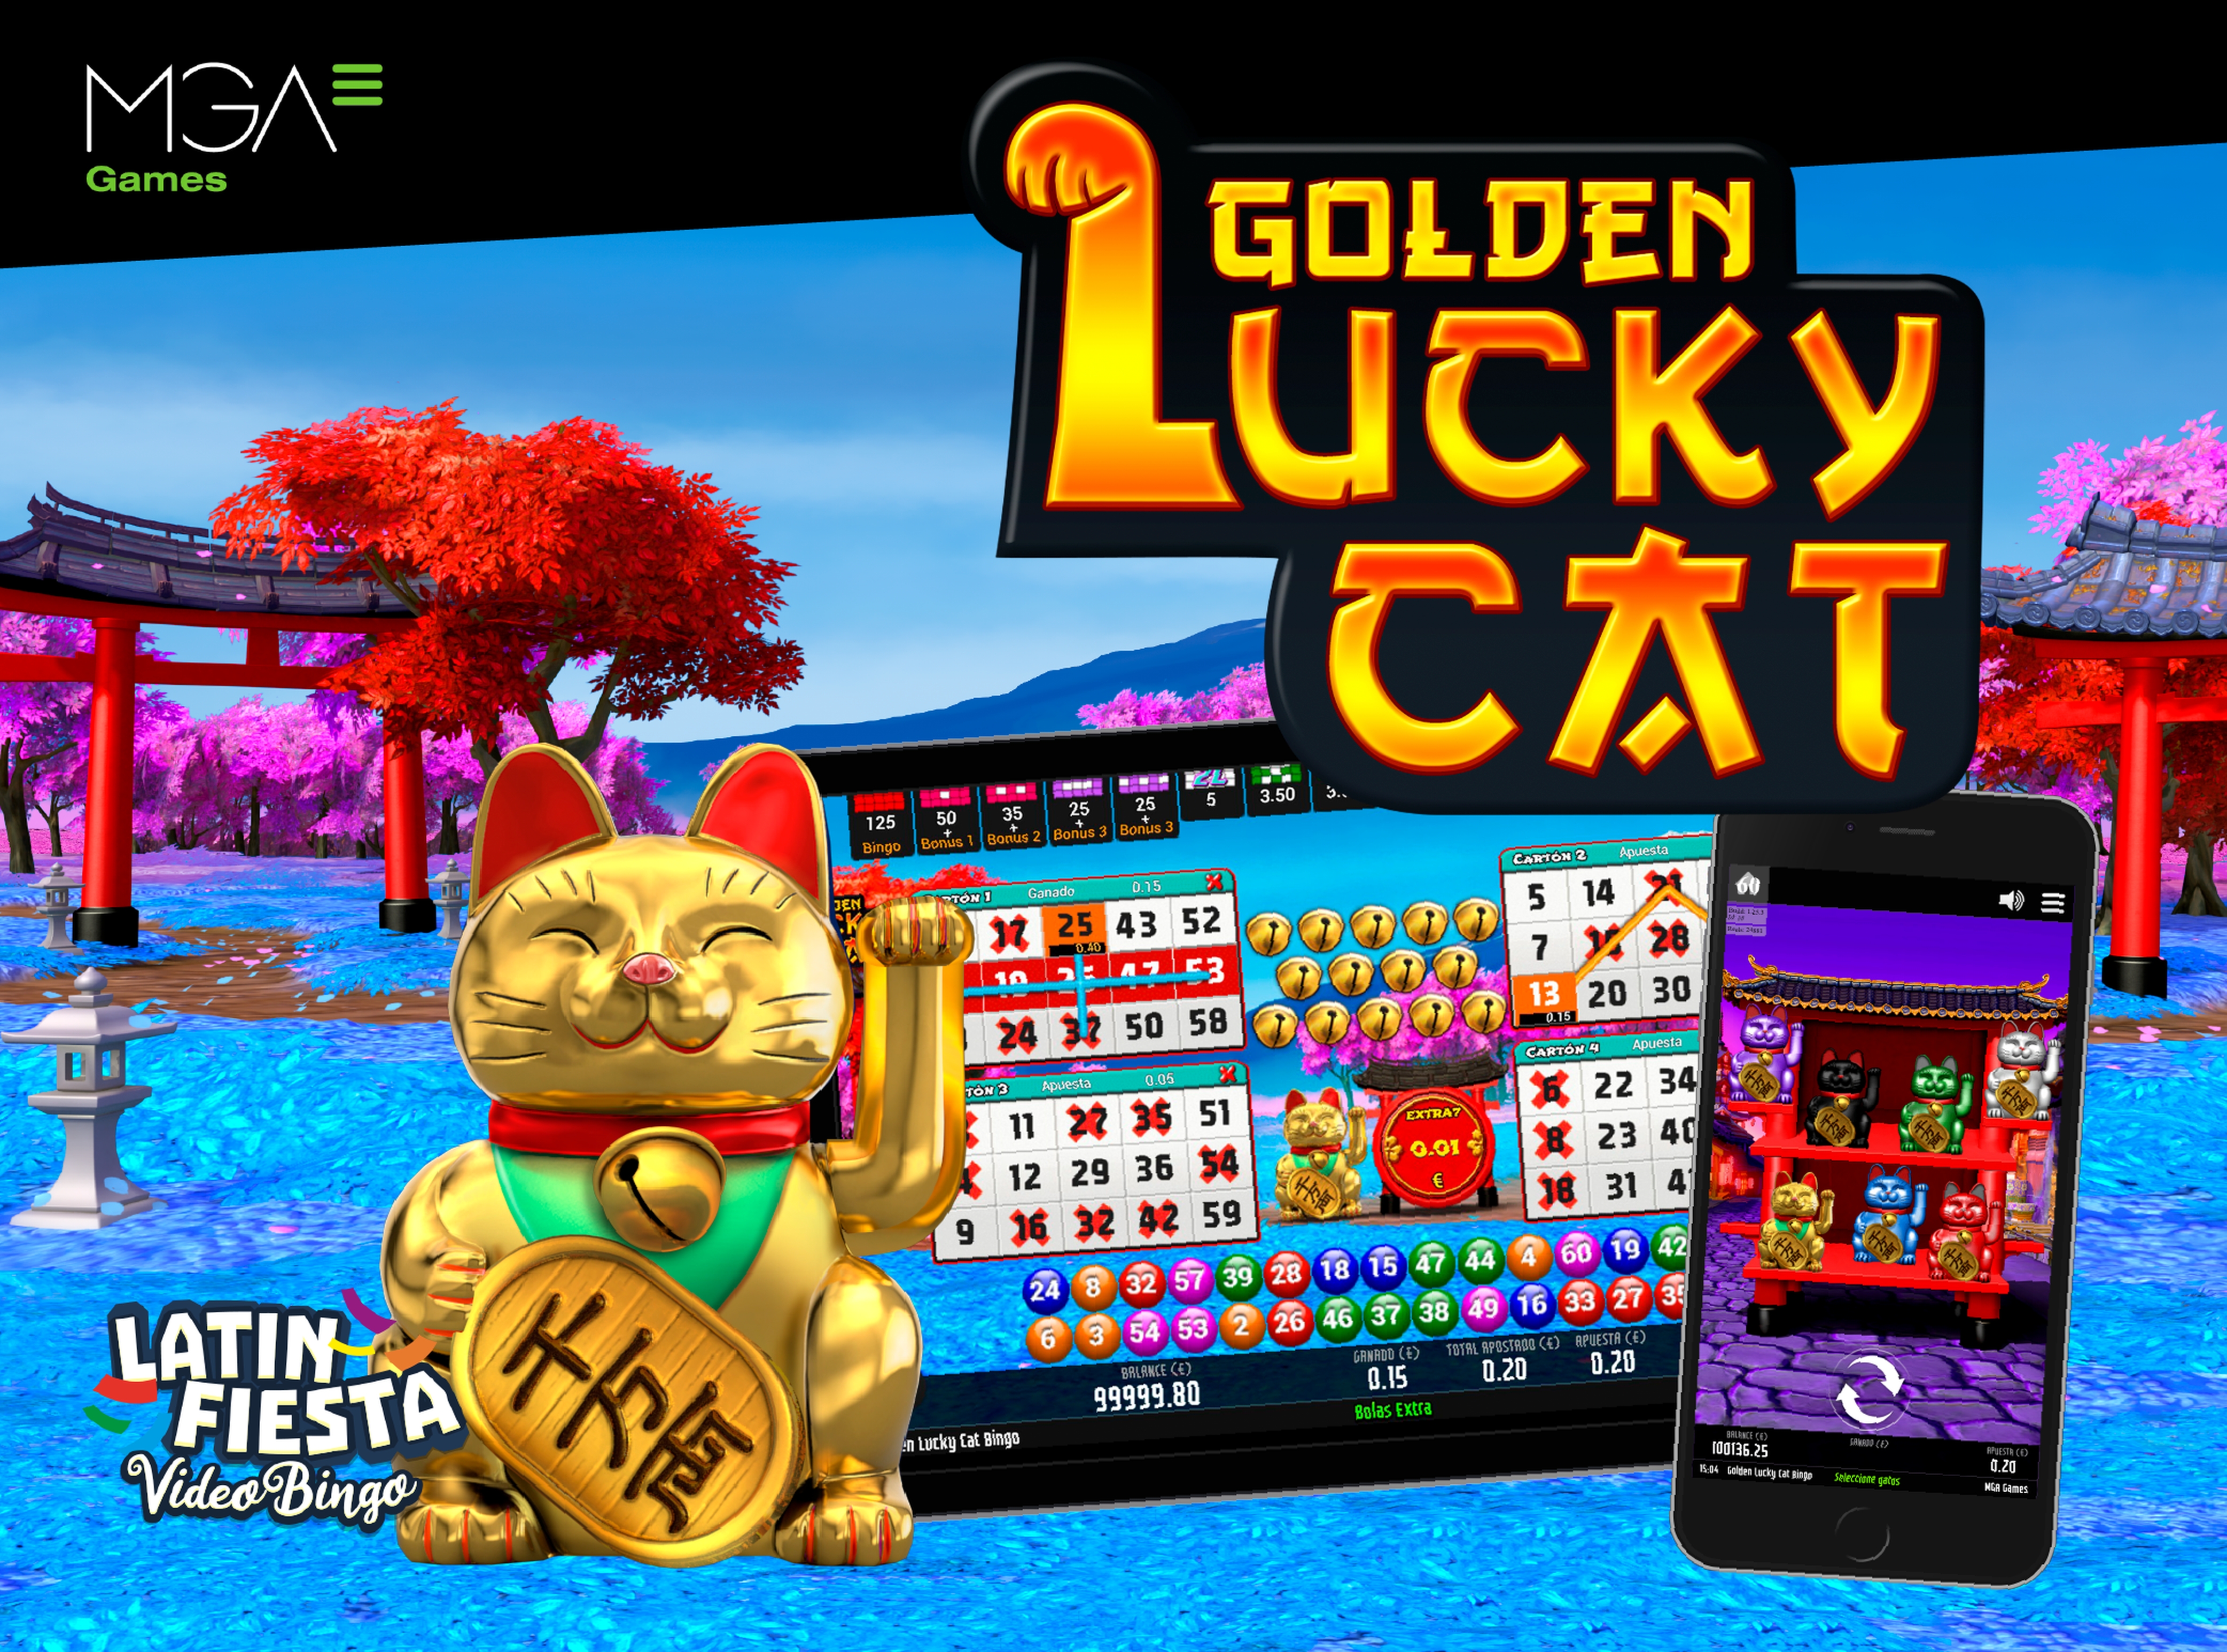 Golden Lucky Cat Bingo demo